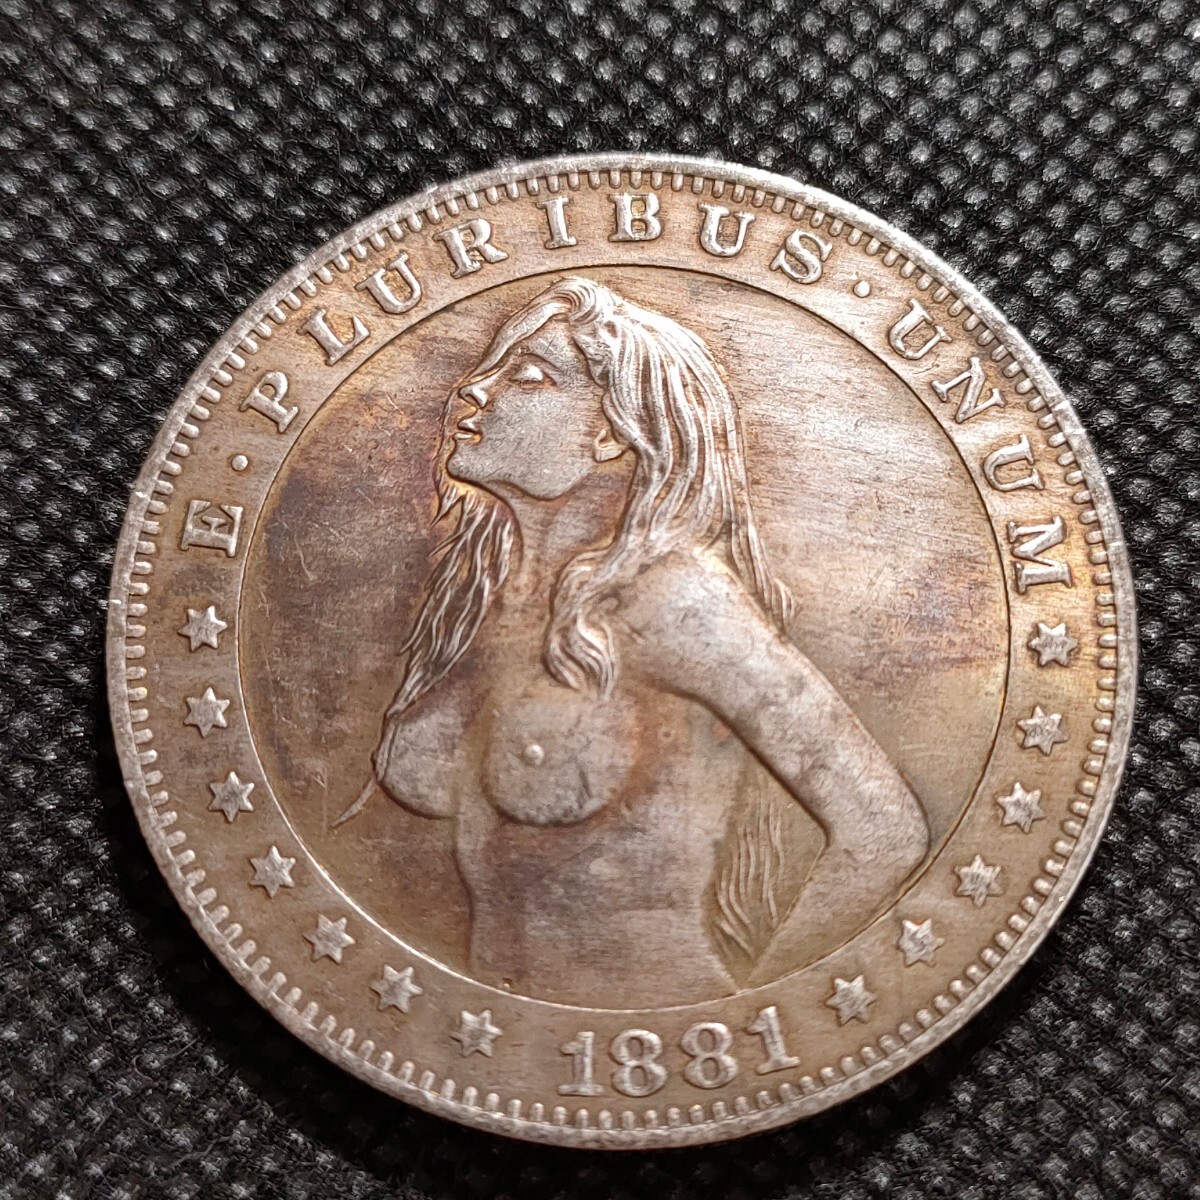 6005 アメリカ古銭 ルンペン 約38mm イーグル チャレンジコイン コイン アンティーク ホーボーの画像1